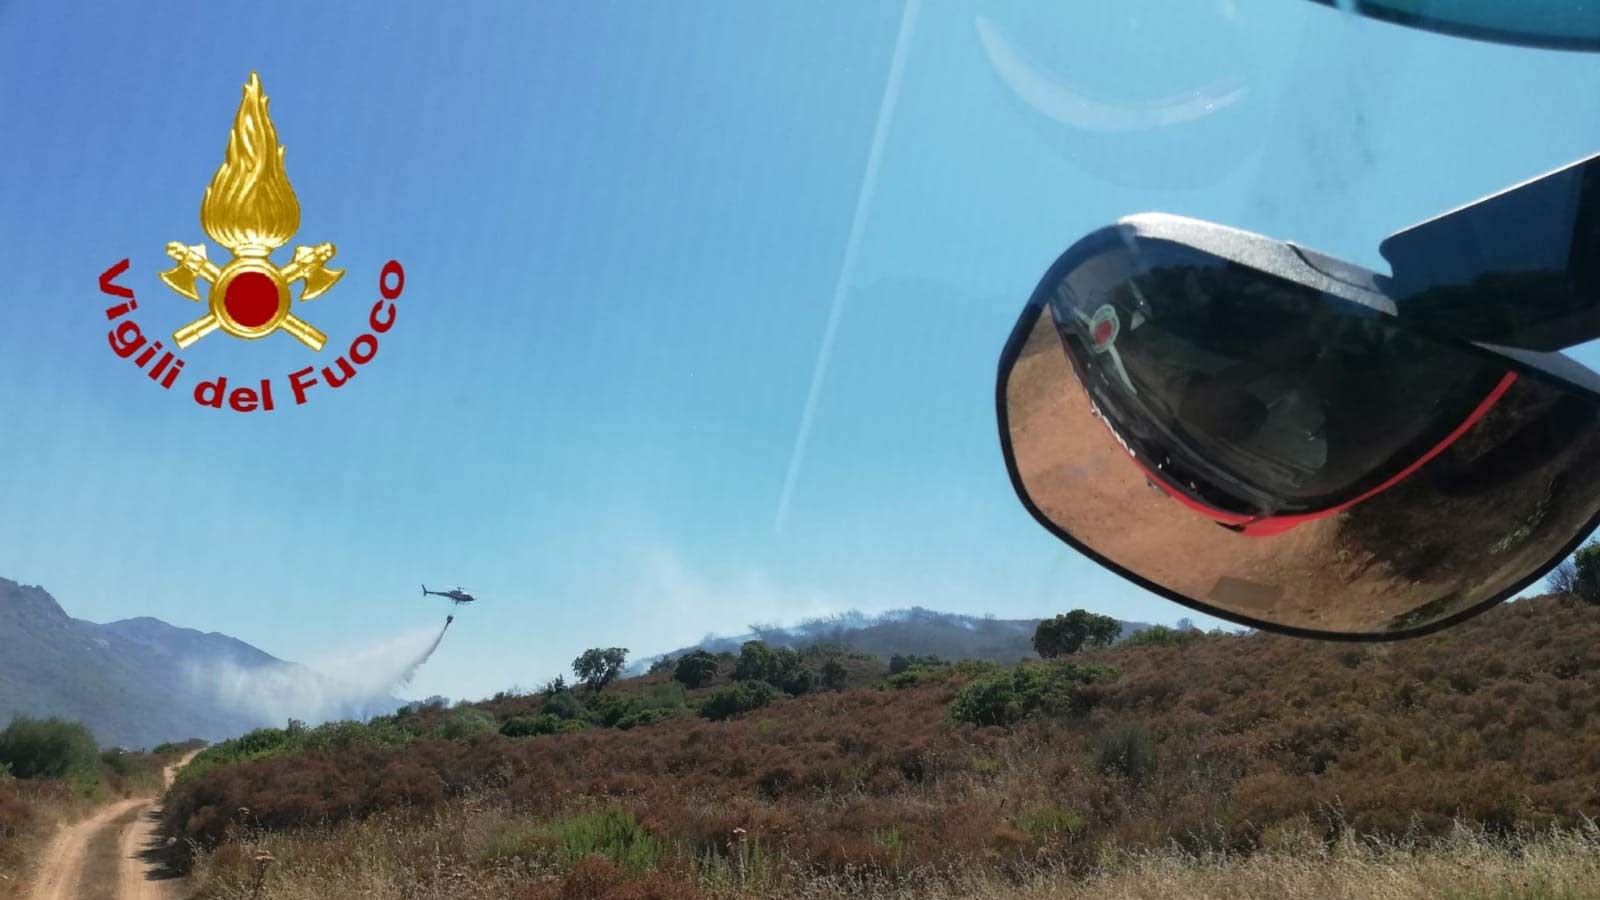 Loiri, incendio a Montelittu: eliccotero, Forestale e Vigili del fuoco in azione